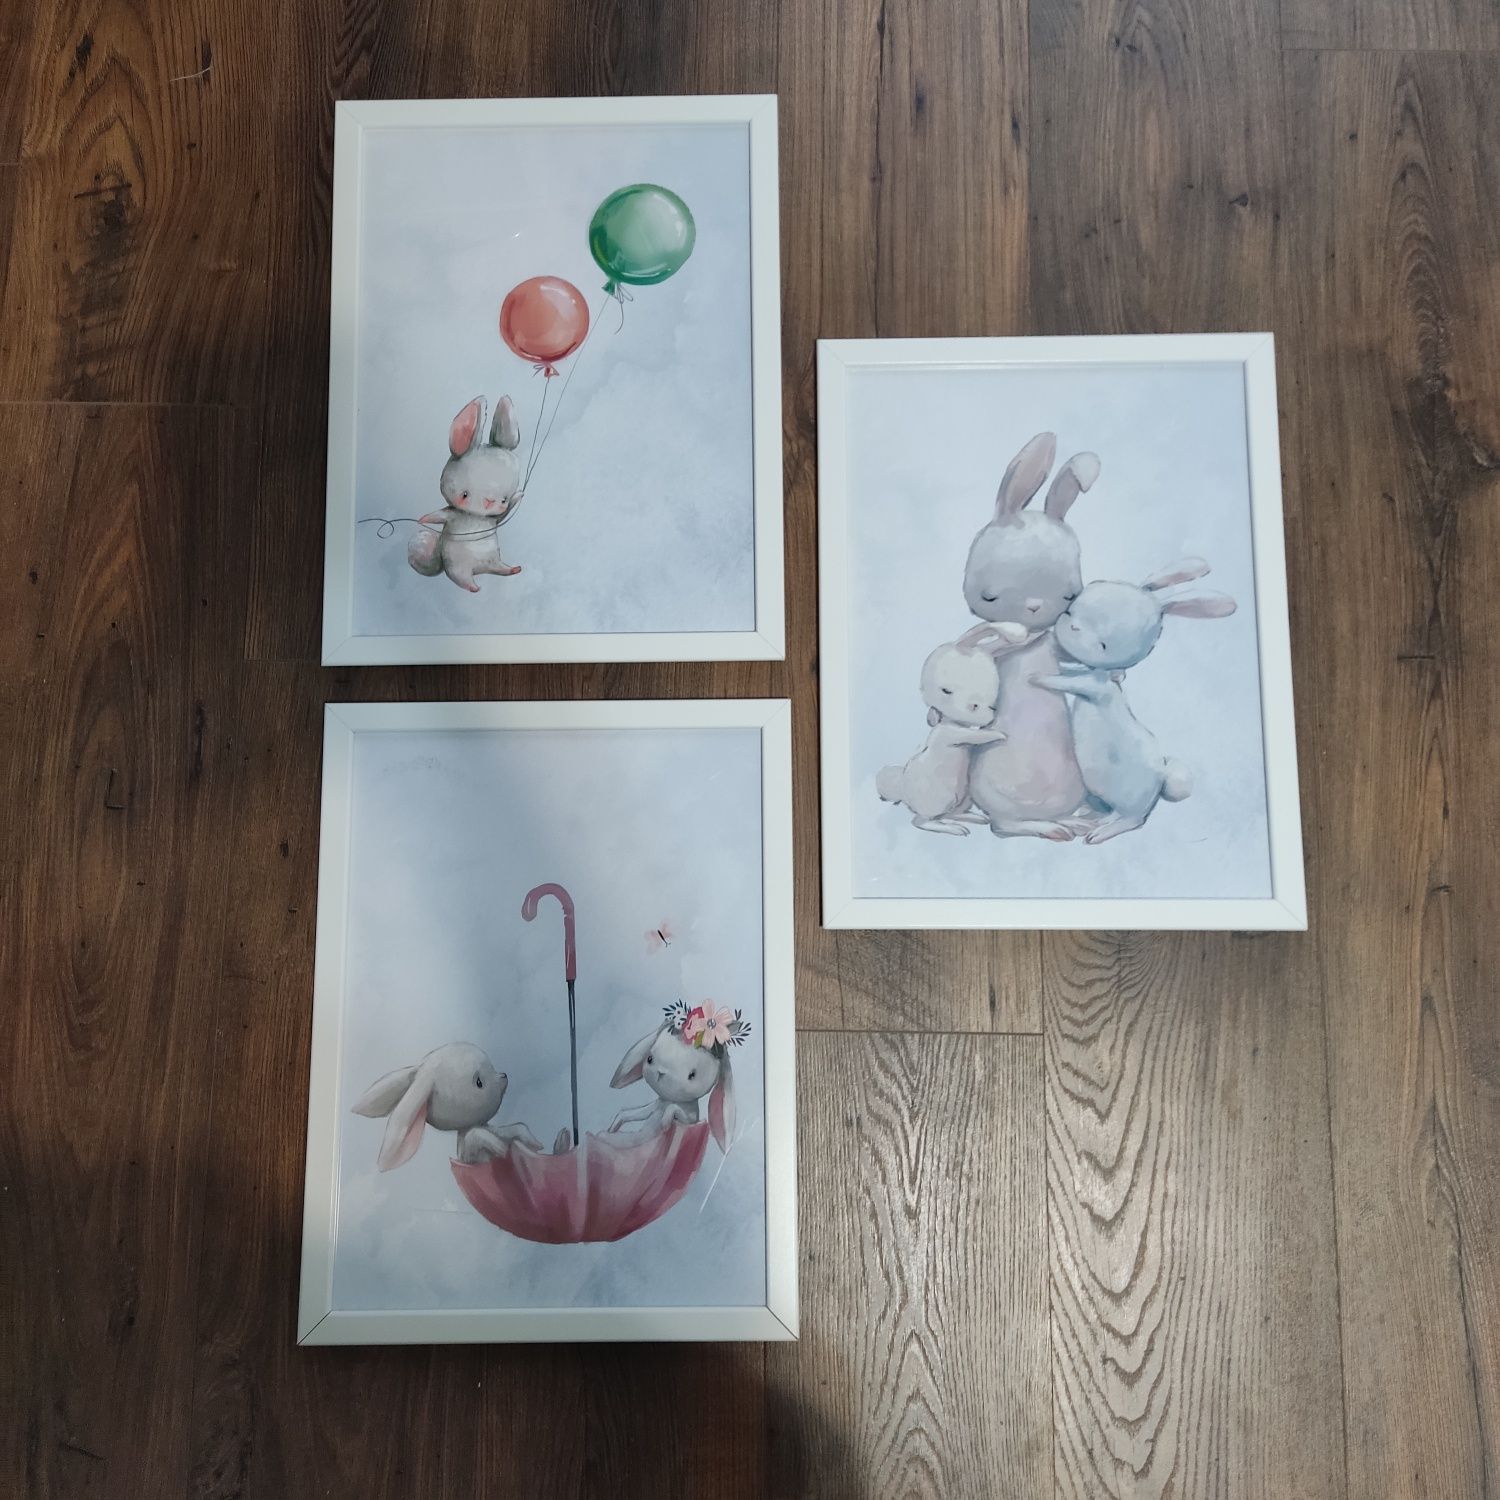 Nowe! Śliczne plakaty, obrazki do pokoju dziecięcego,króliki,króliczki